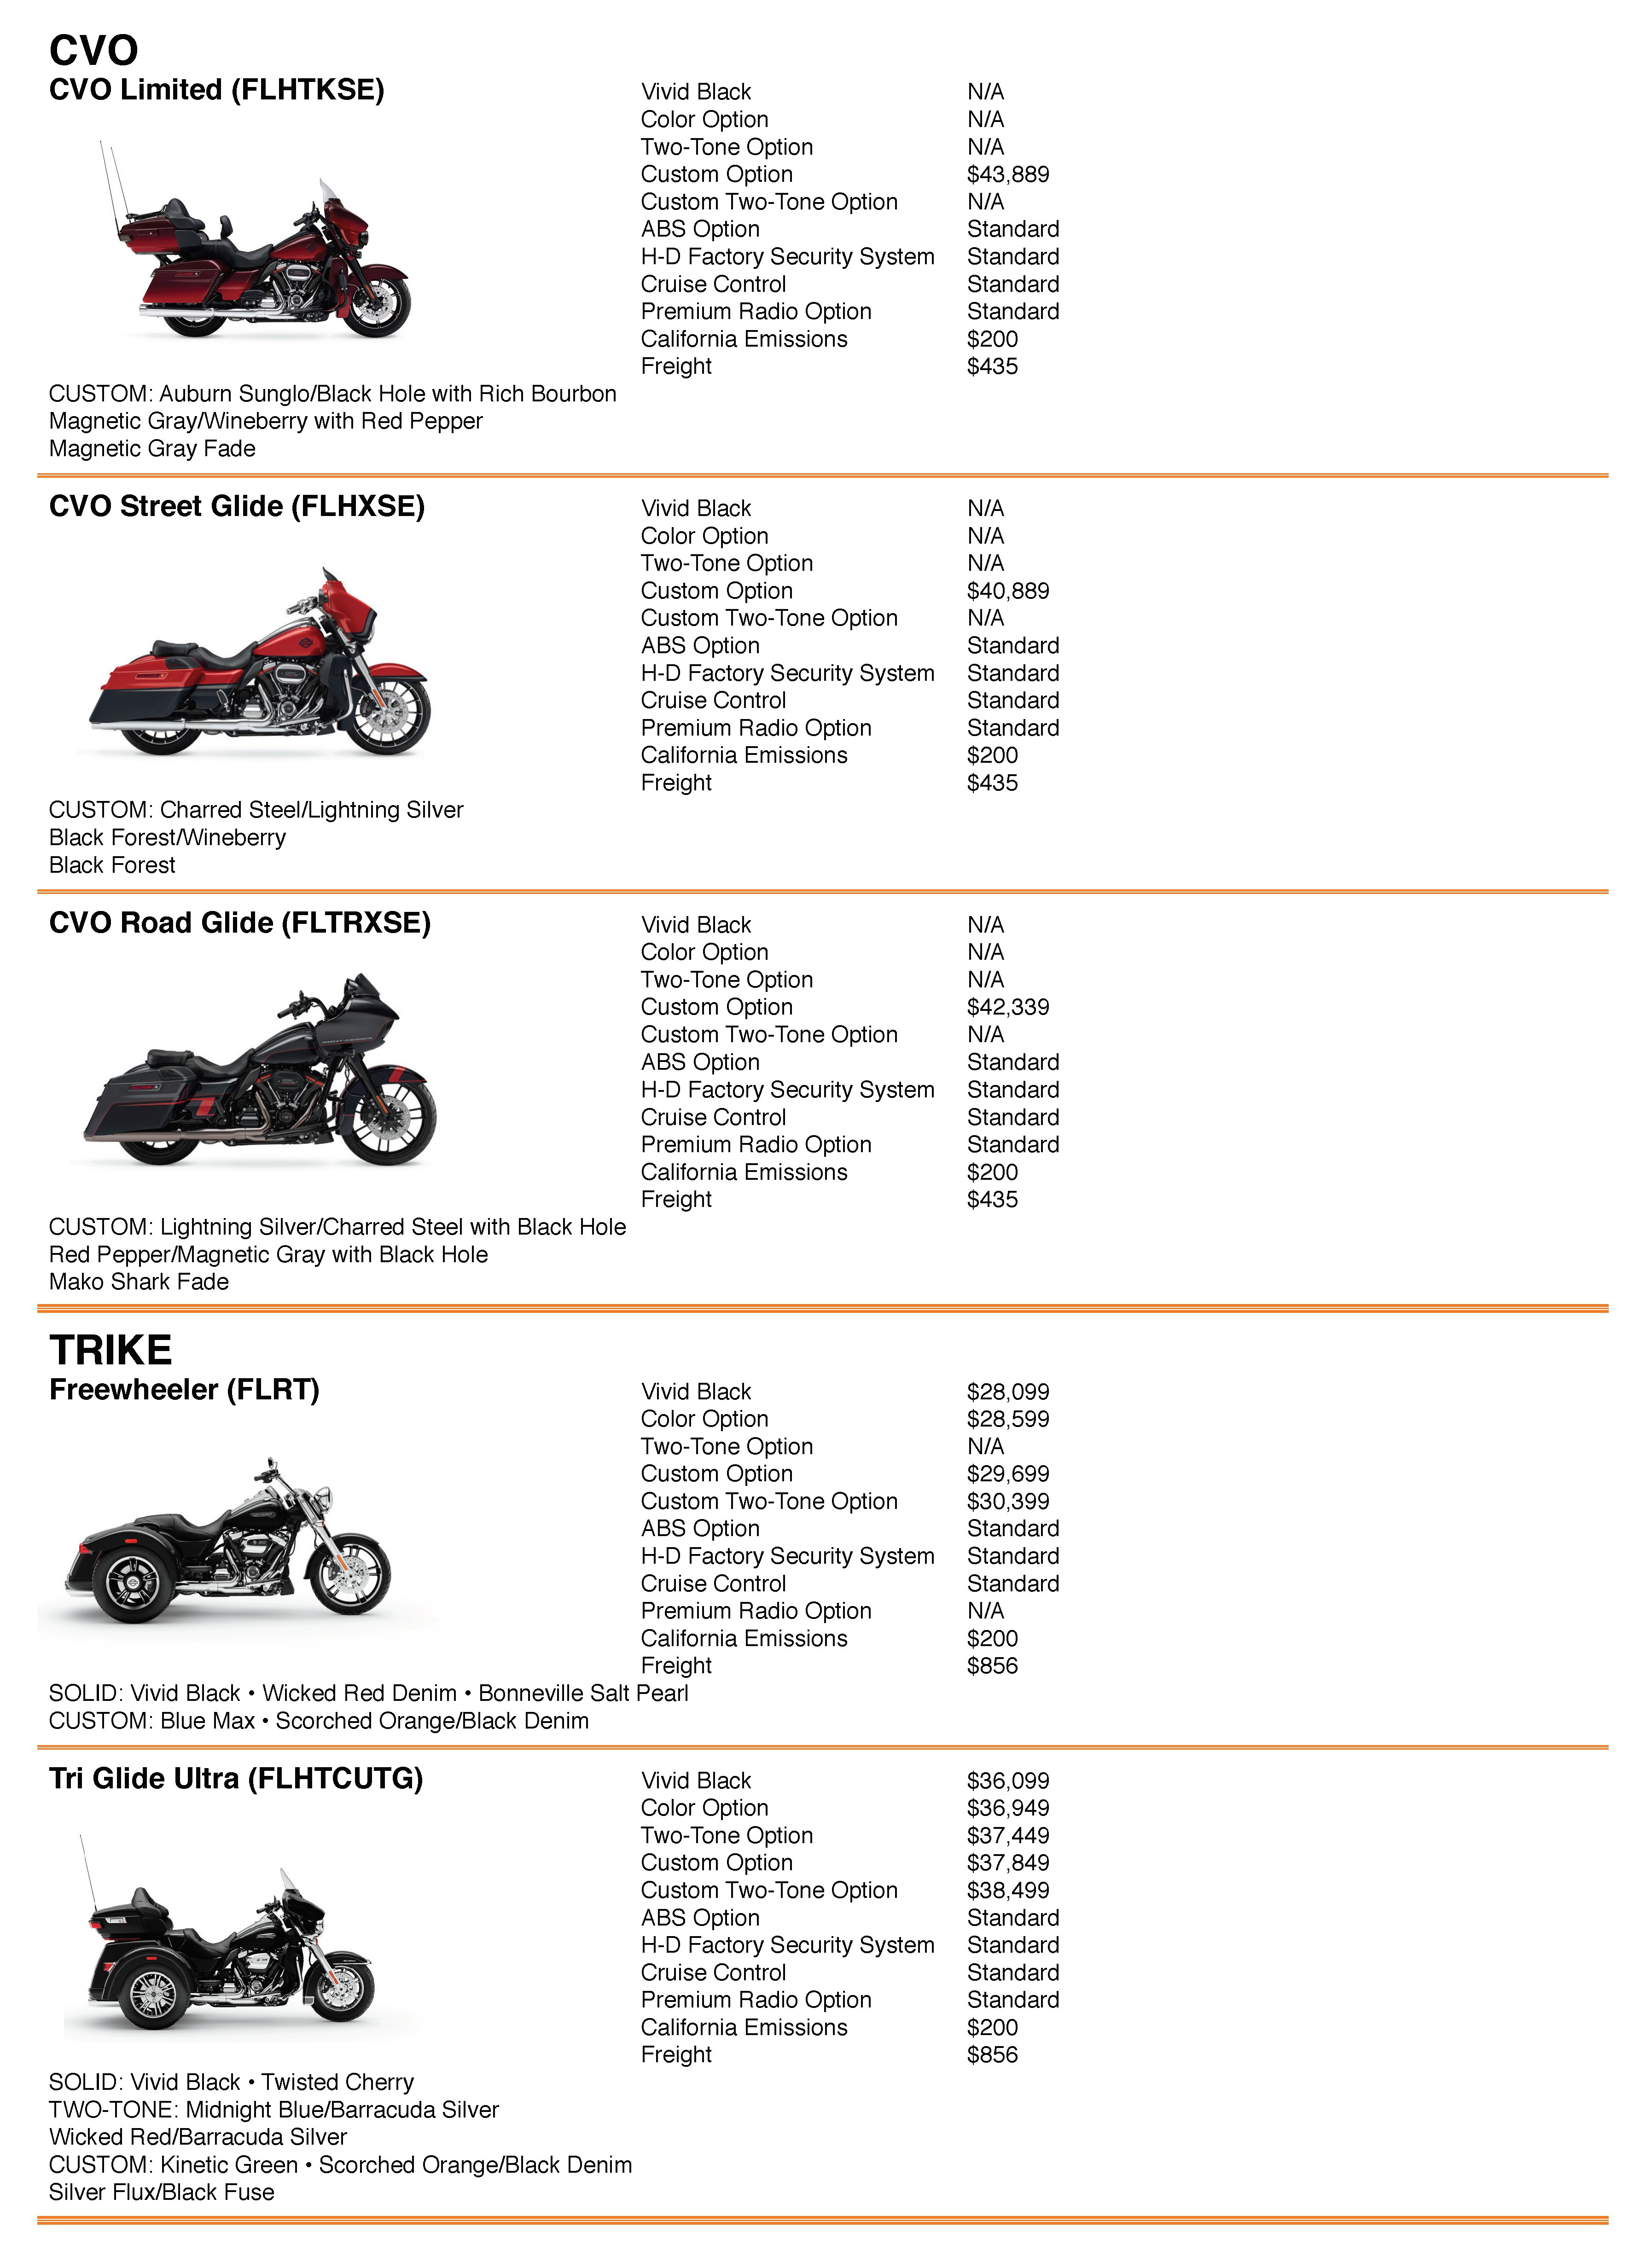 2012 Harley Davidson Color Chart